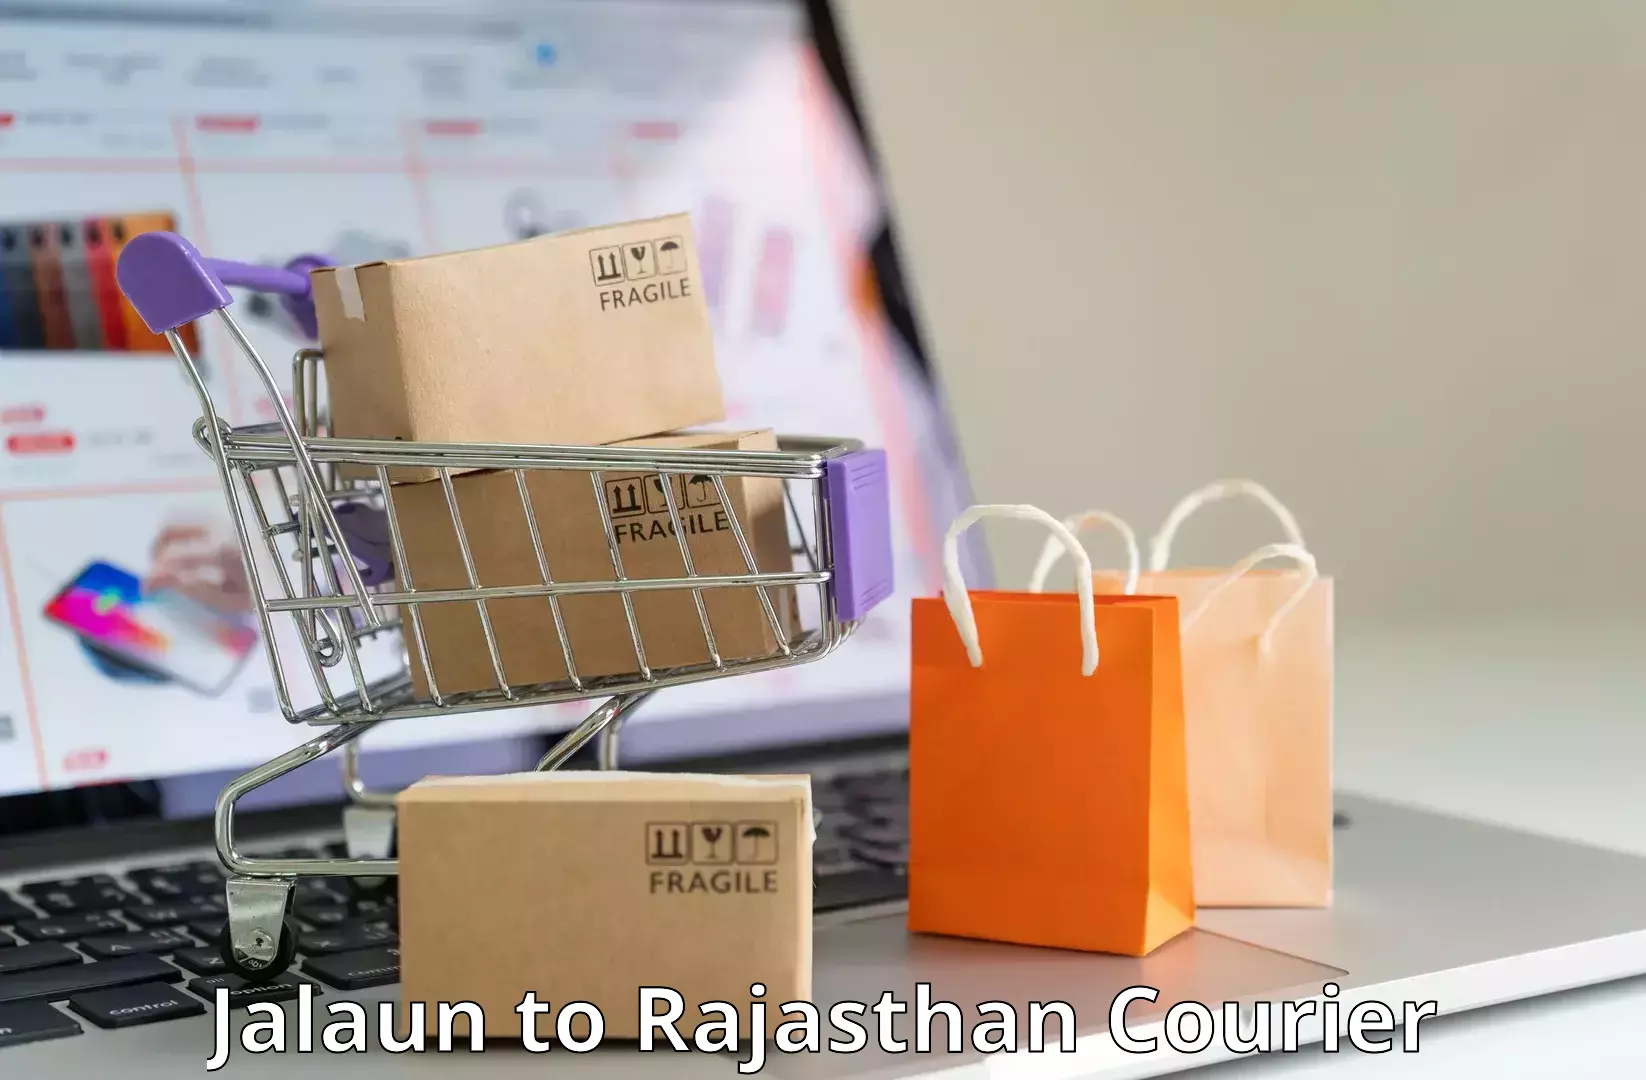 On-demand shipping options Jalaun to IIT Jodhpur